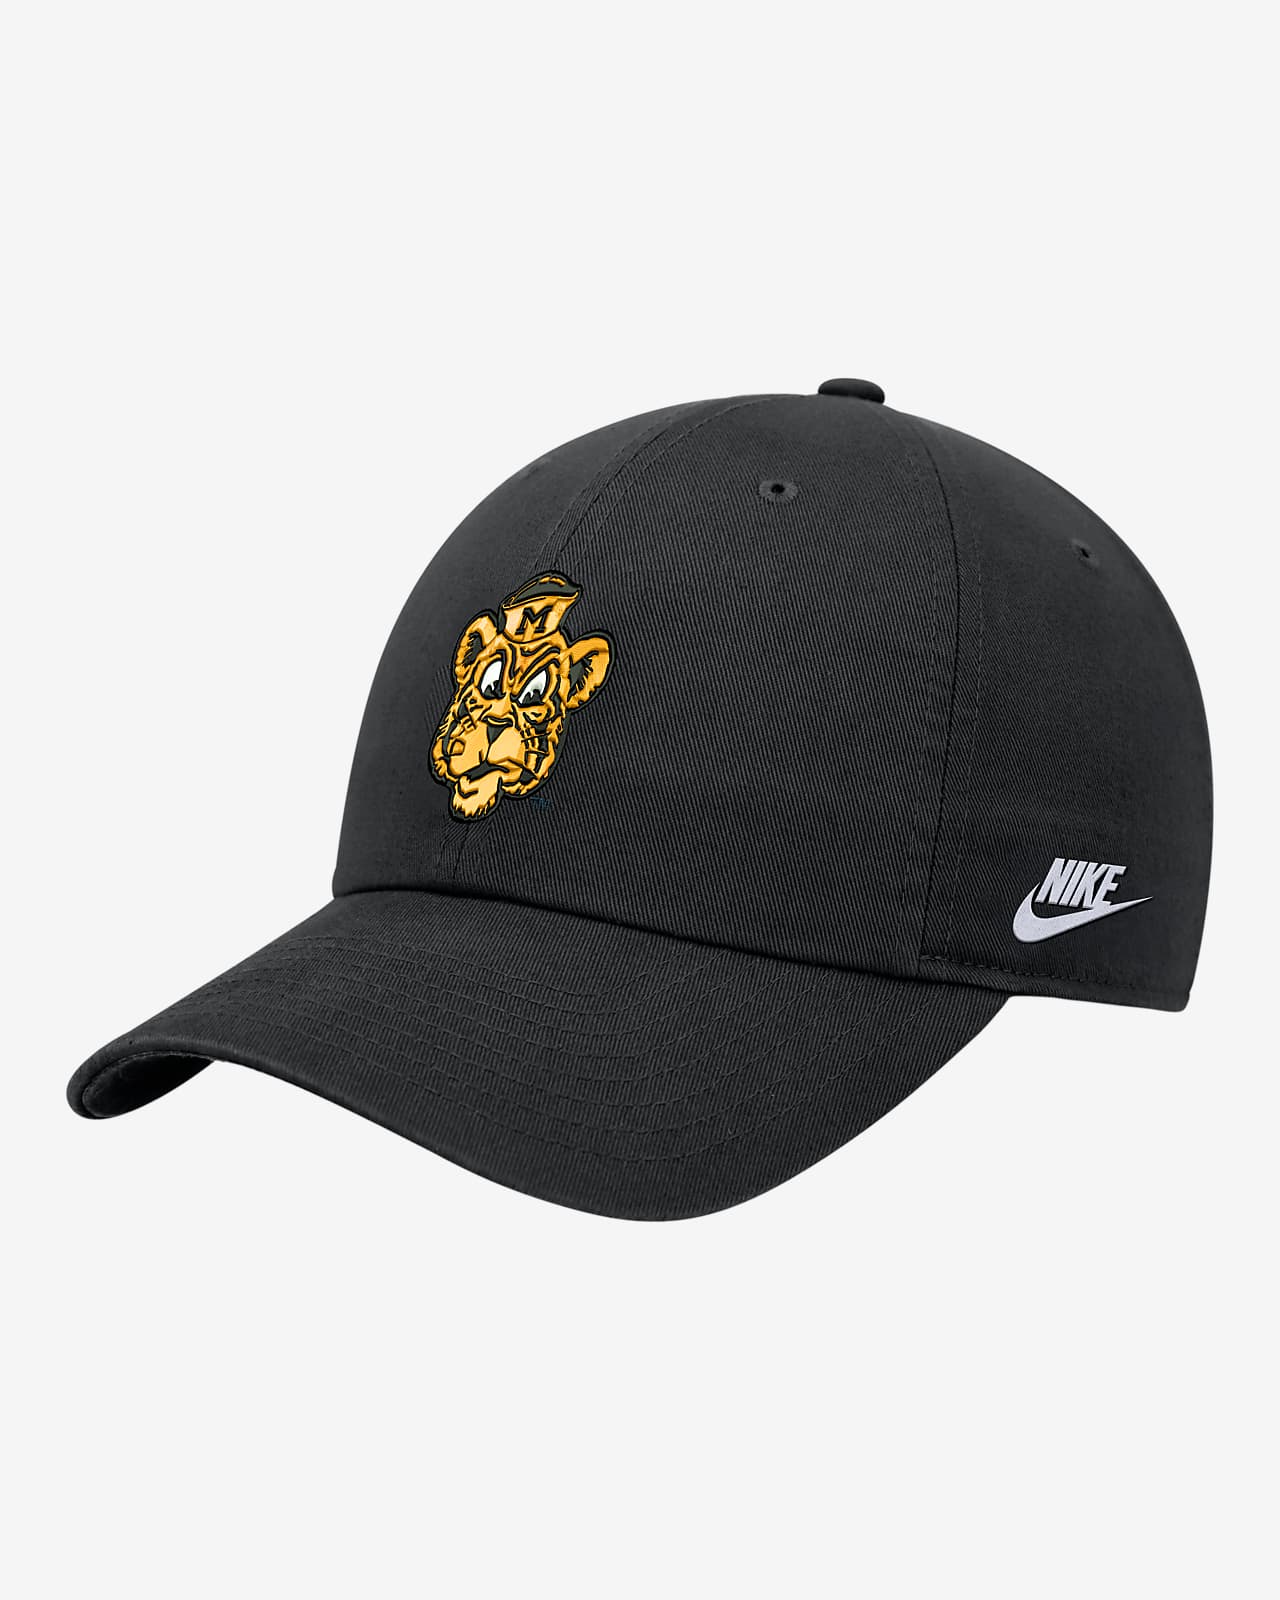 Missouri Nike College Cap